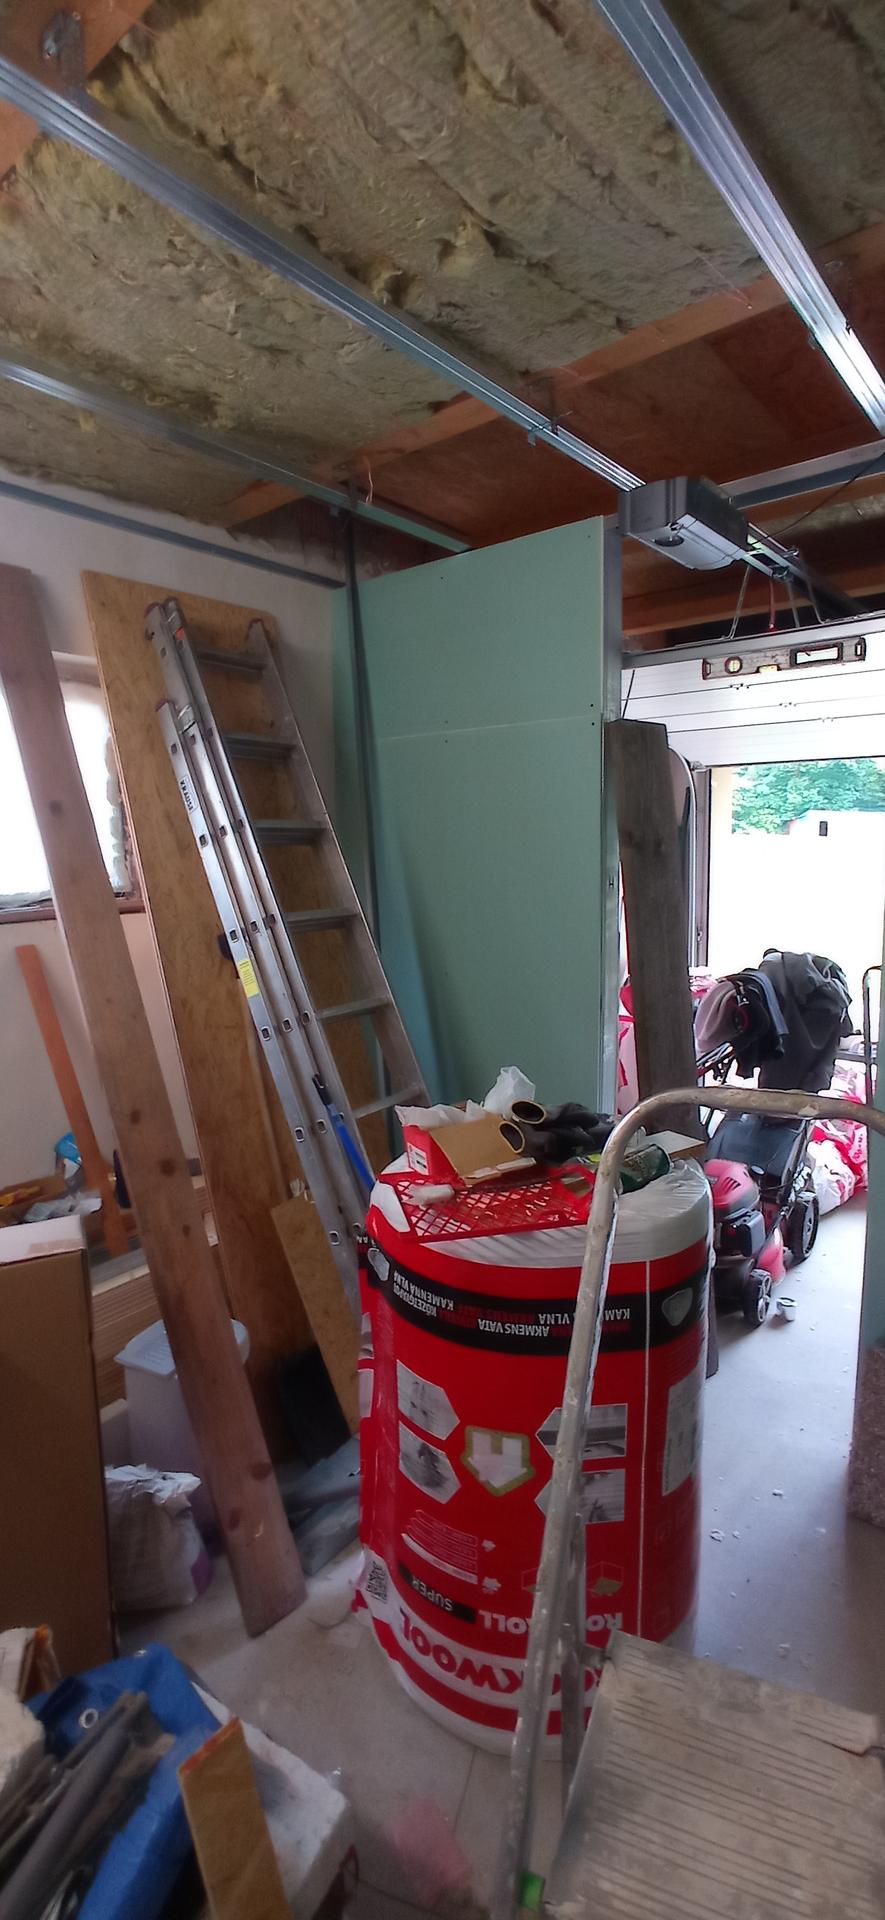 Budování sauny v garáži - Obrázek č. 3